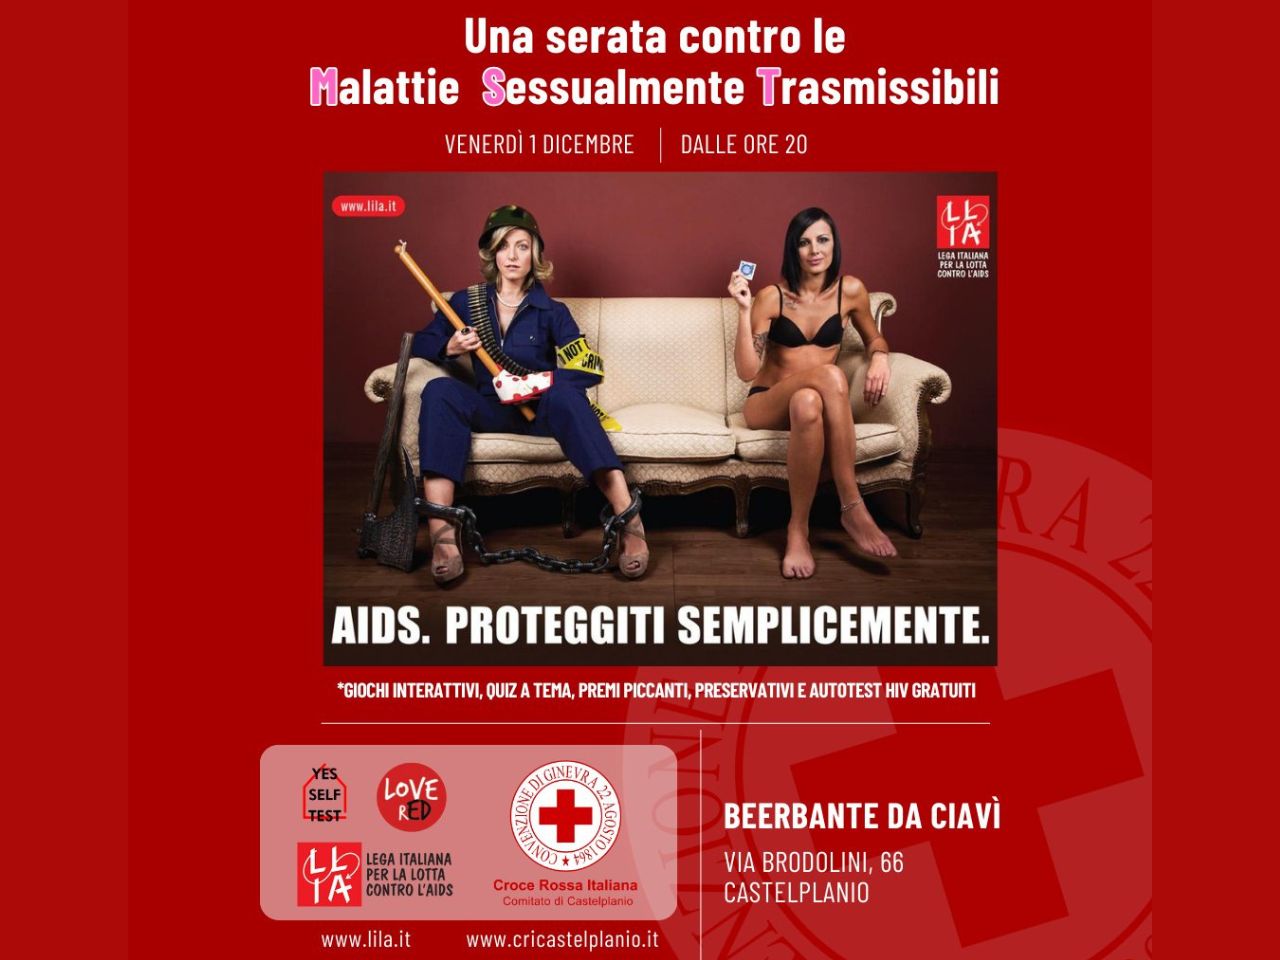 “Non fare il beerbante… copriti!”, venerdì l’appuntamento della croce rossa con le Malattie Sessualmente Trasmissibili